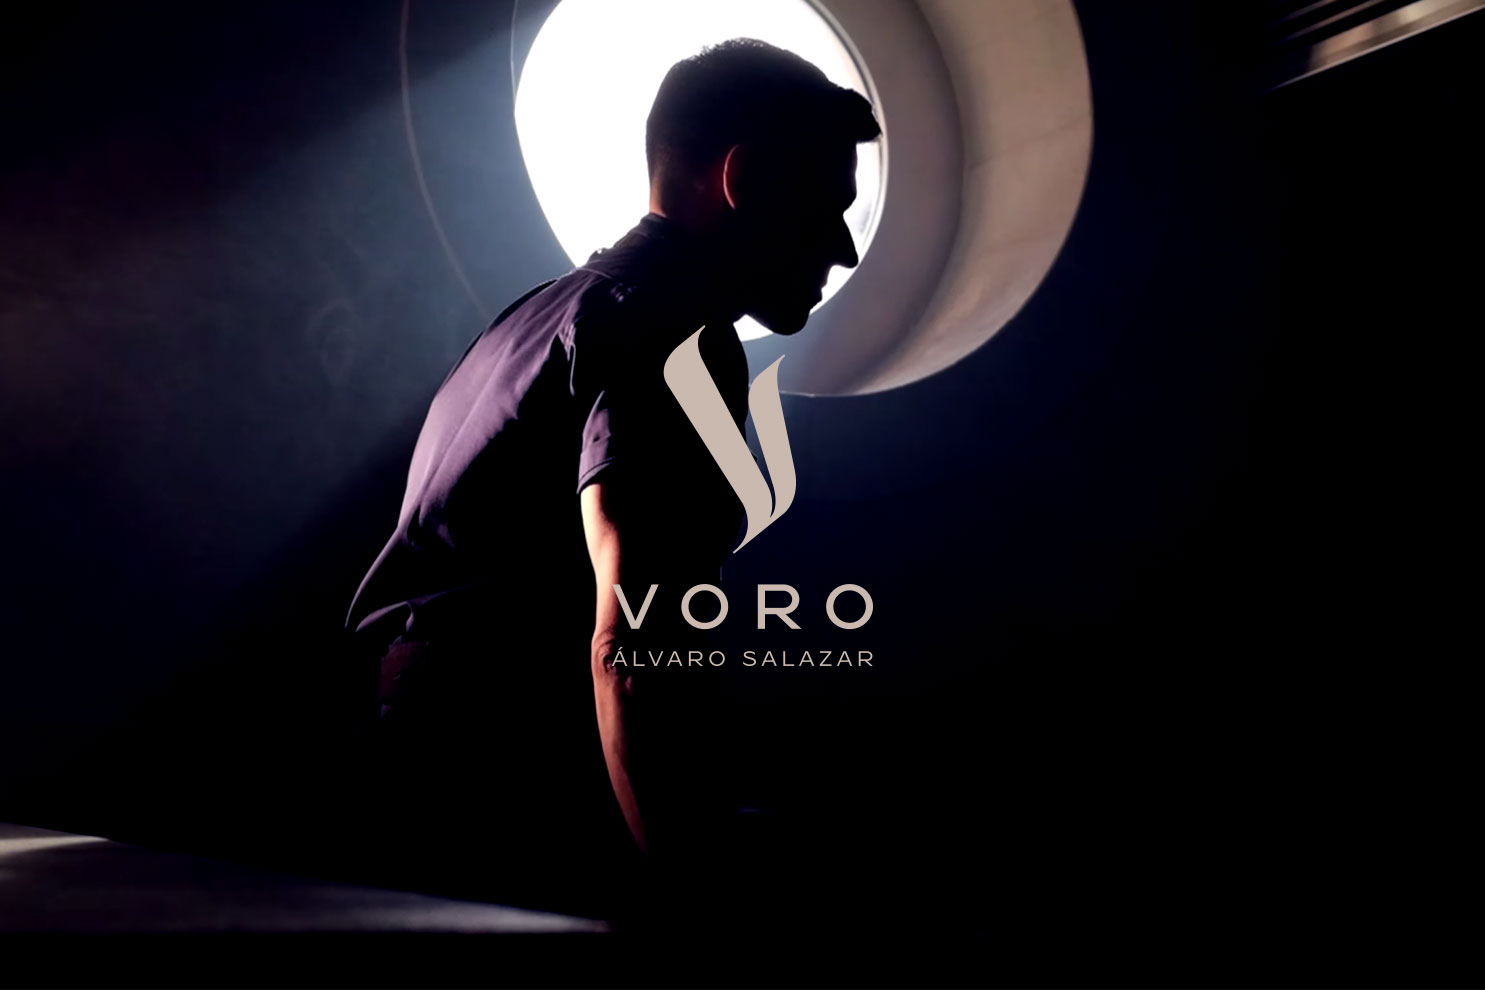 Voro, by Álvaro Salazar